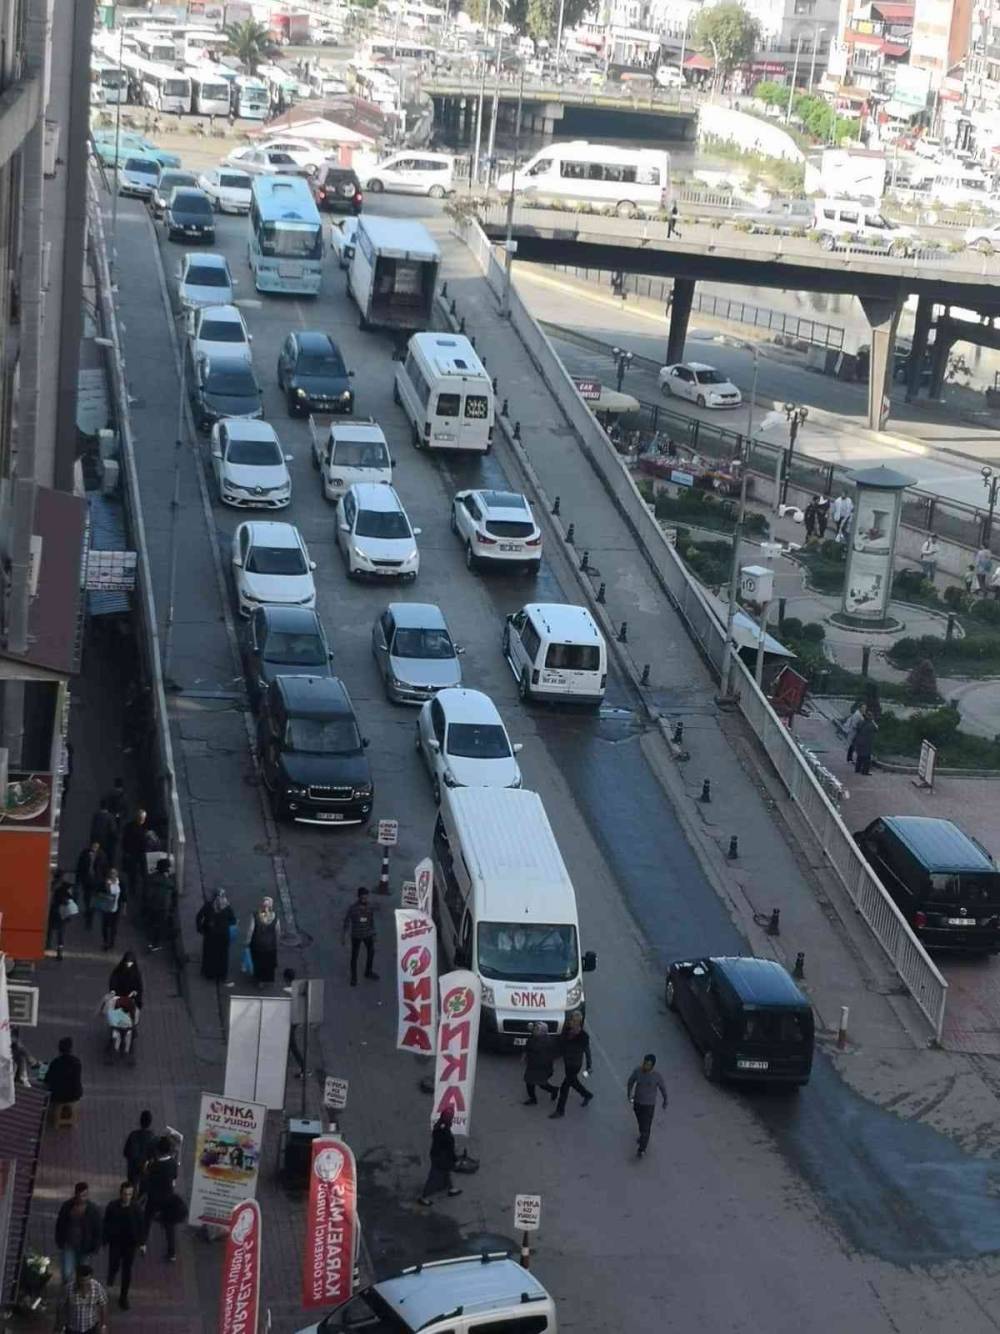 Zonguldak’ta trafiğe kayıtlı araç sayısı 164 bin 556 oldu
